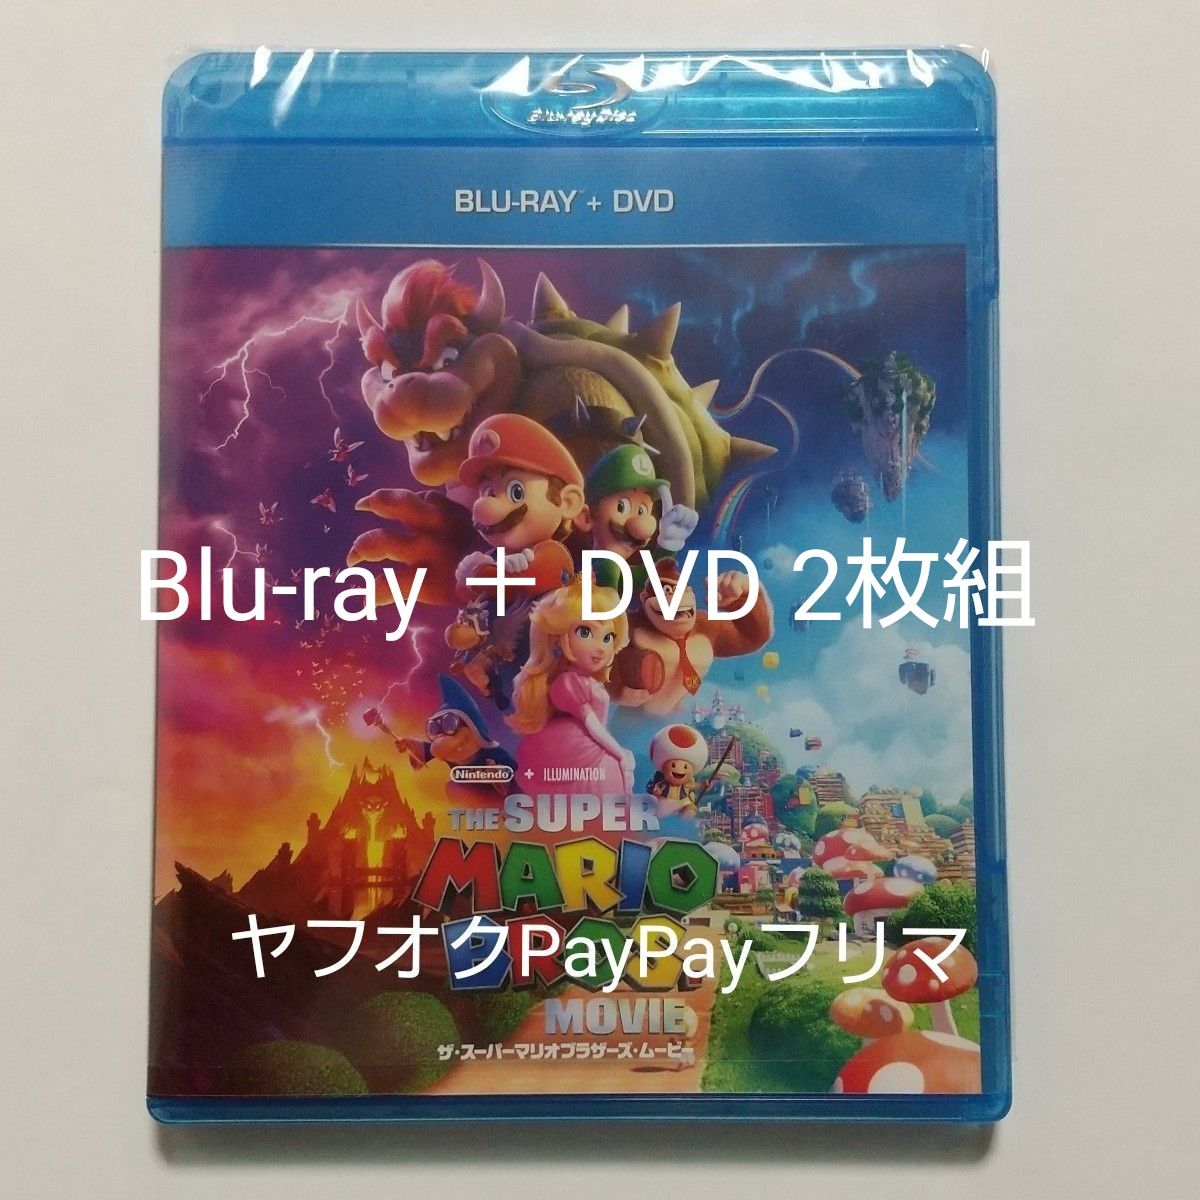 ザ・スーパーマリオブラザーズ・ムービー Blu-ray ＋ DVD 2枚組｜PayPayフリマ